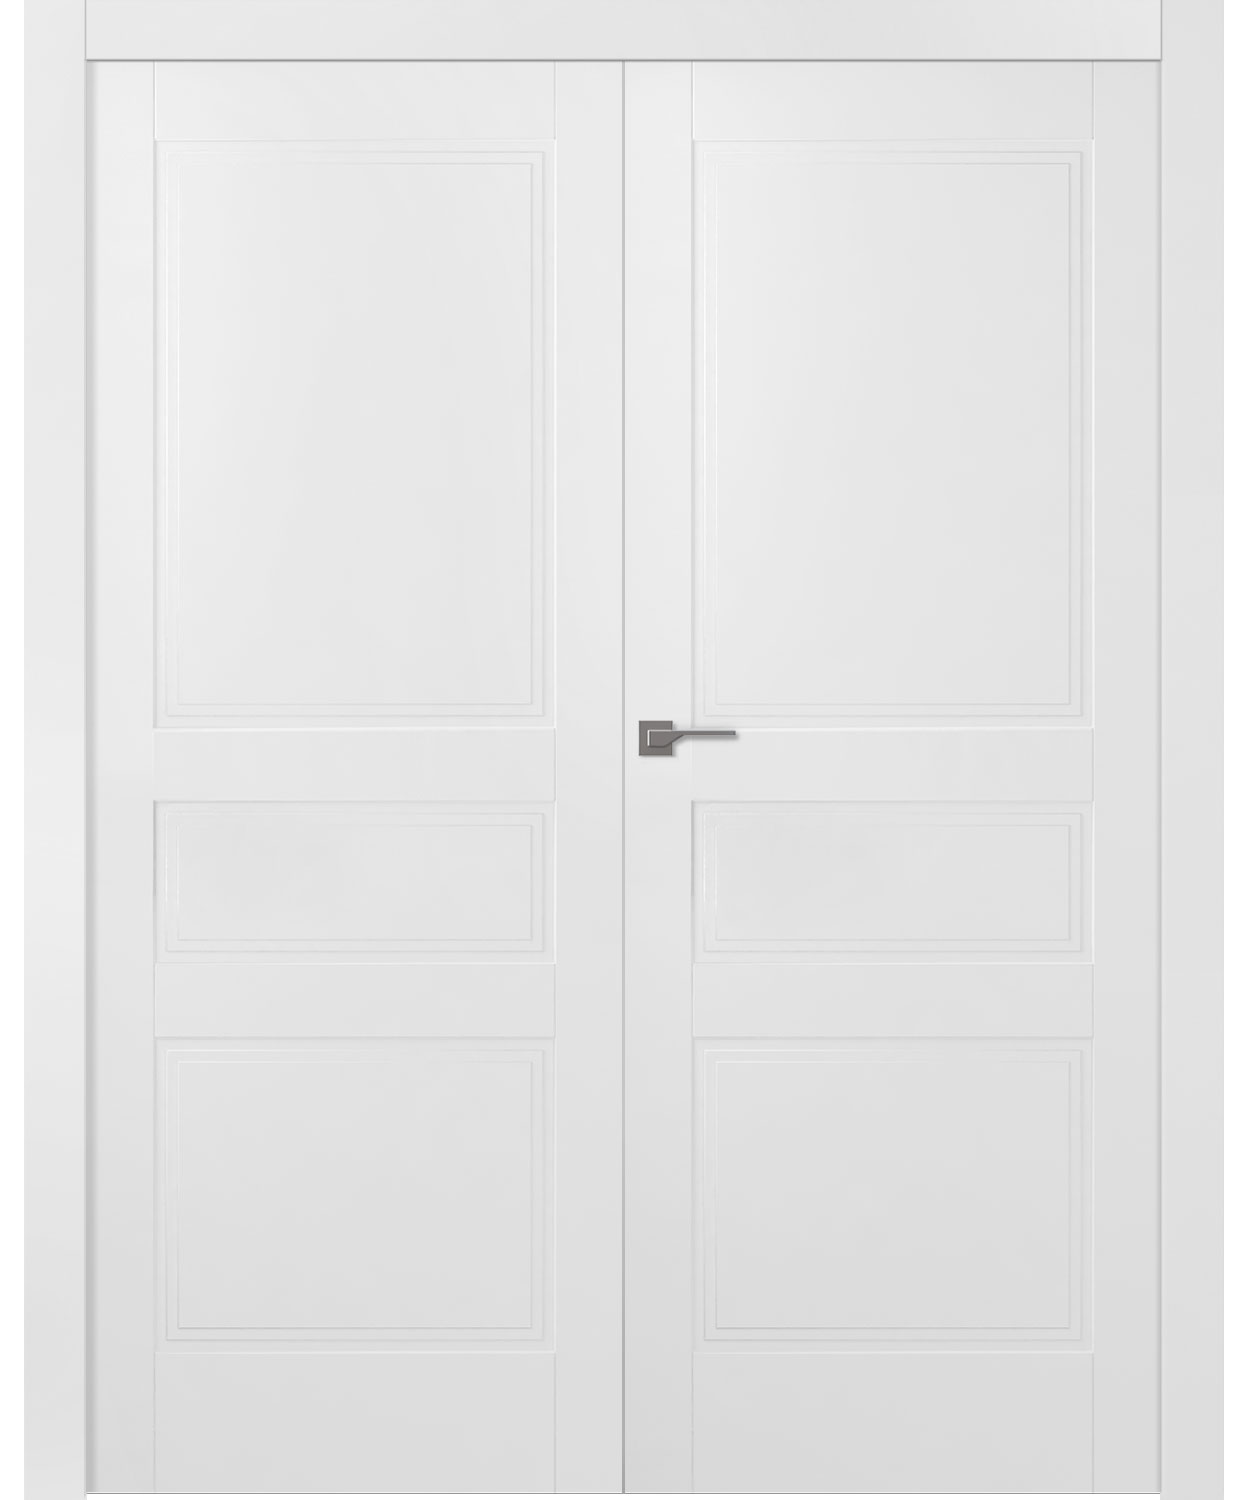 Дверное Полотно Пвдгщ "Инари" Эмаль Белый 2,0-0,8 Распашная двойная